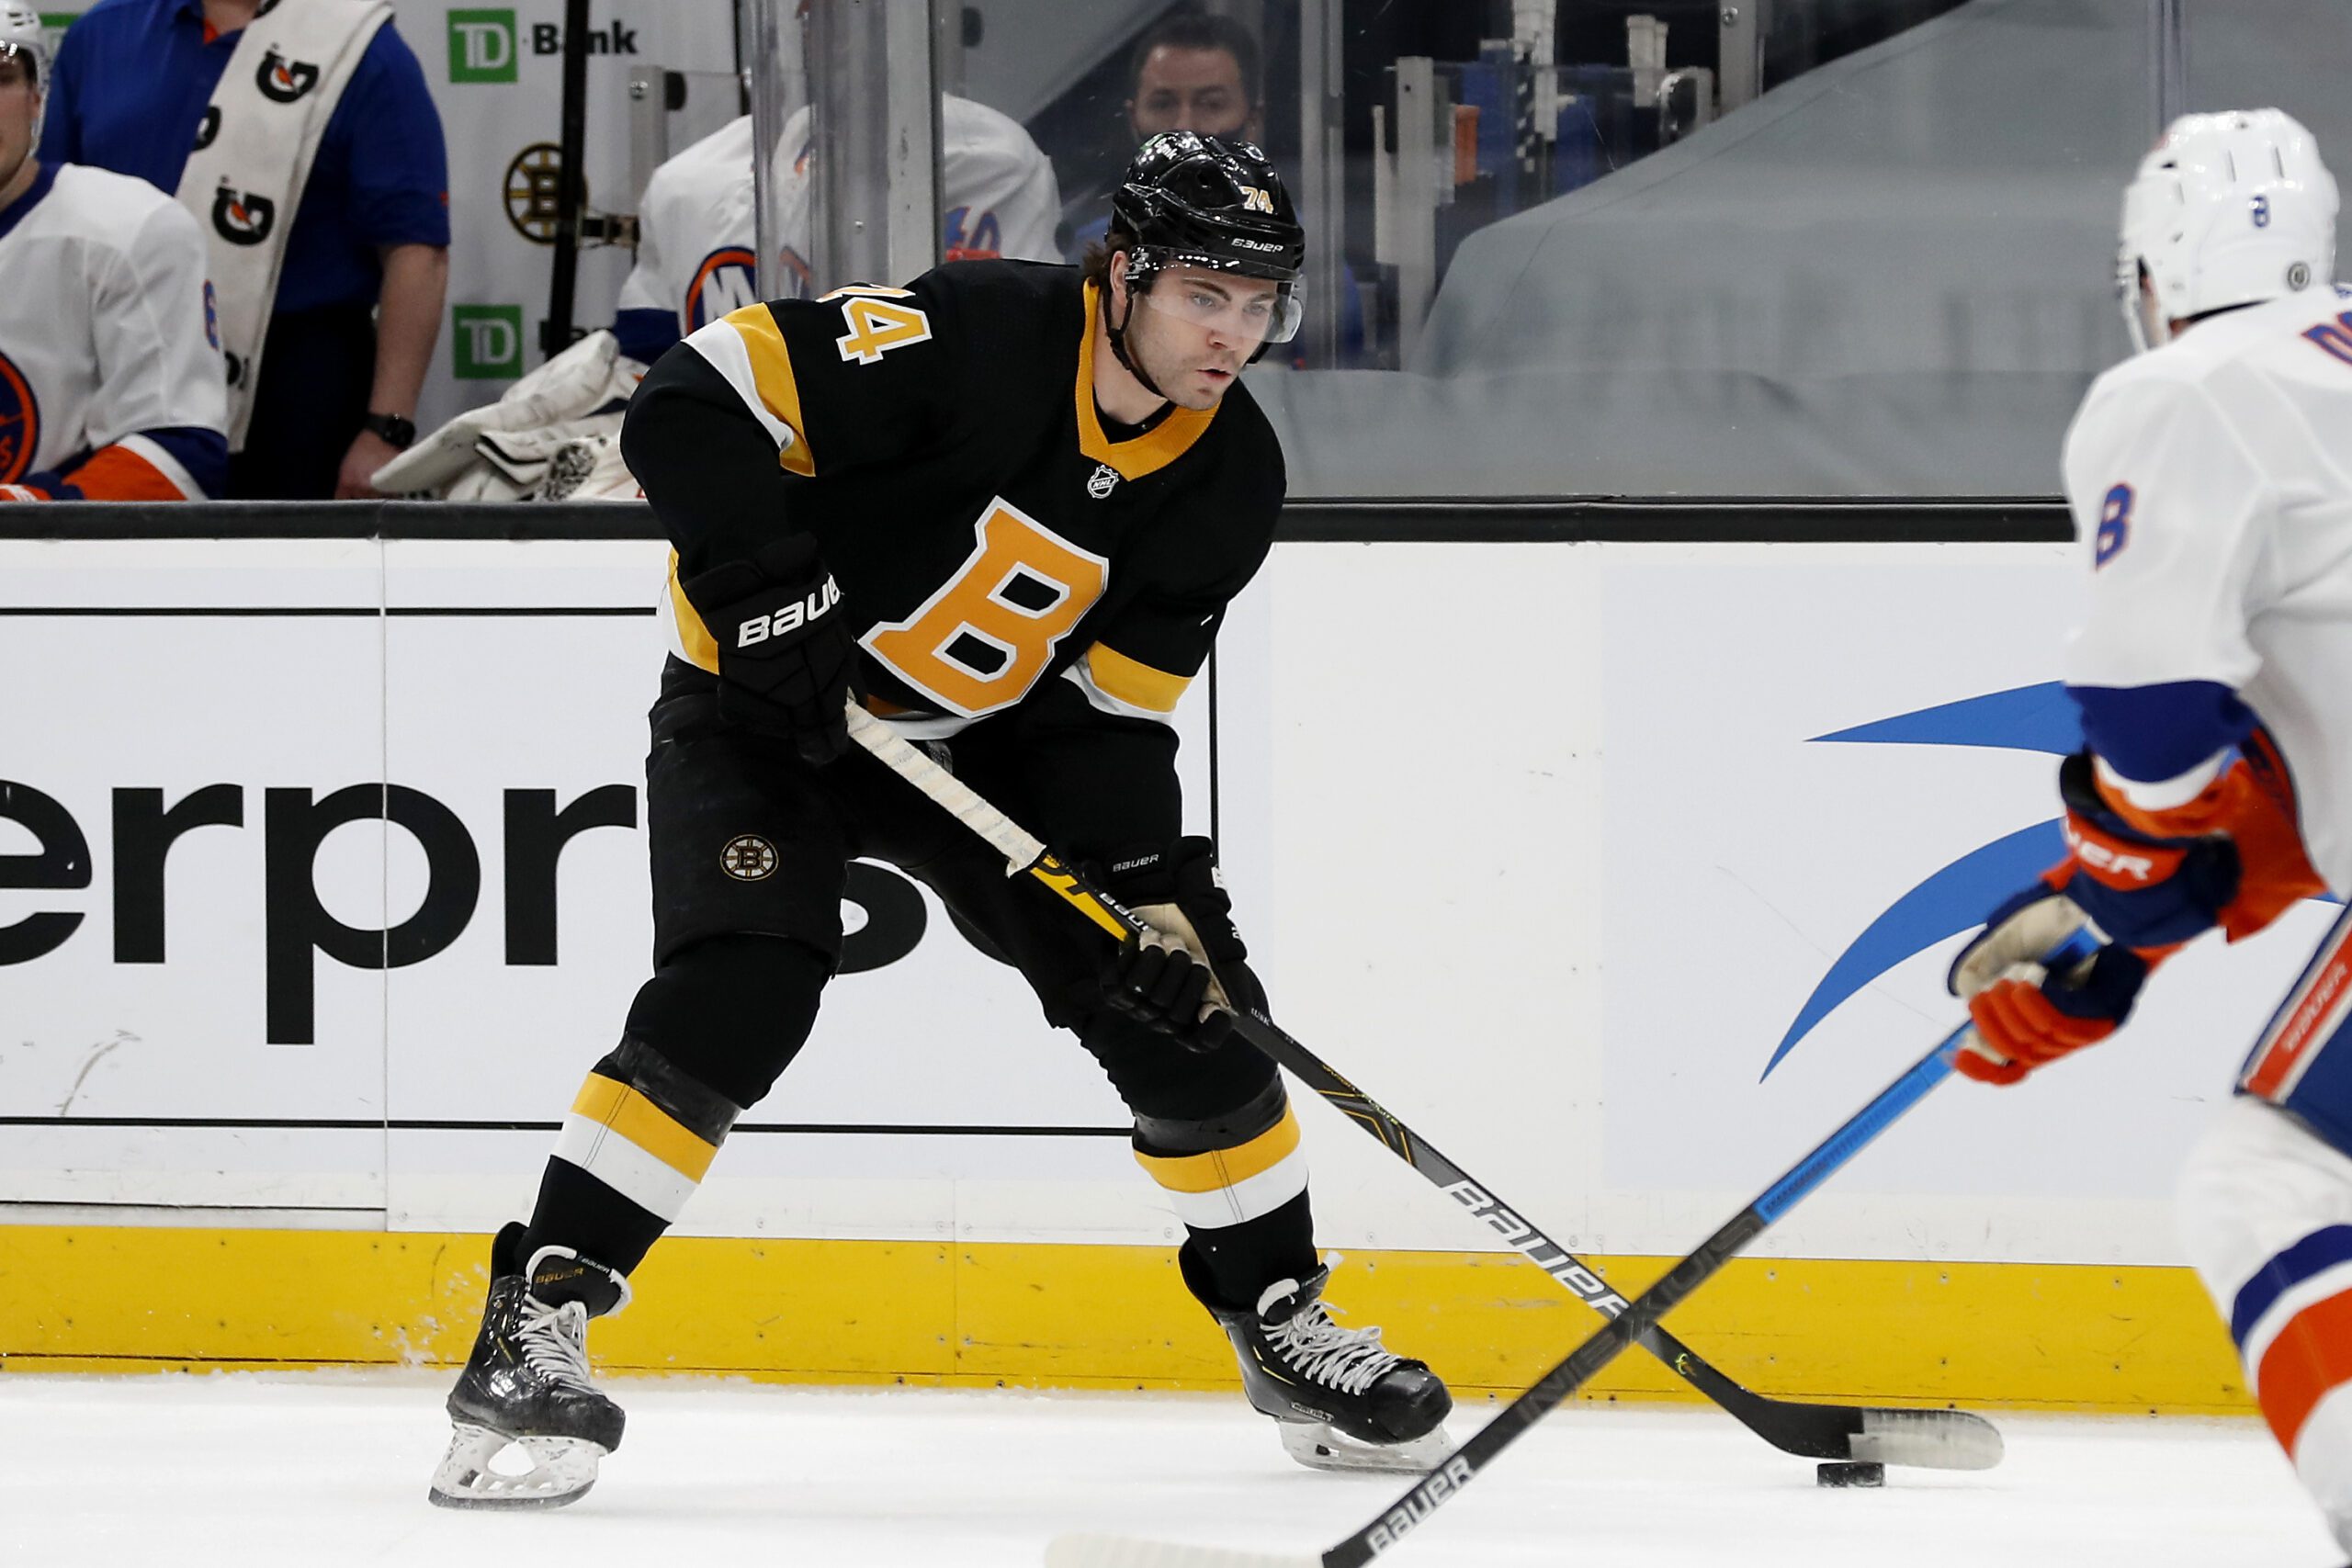 Jake-DeBrusk-Boston-Bruins-Against-New-York-Islanders